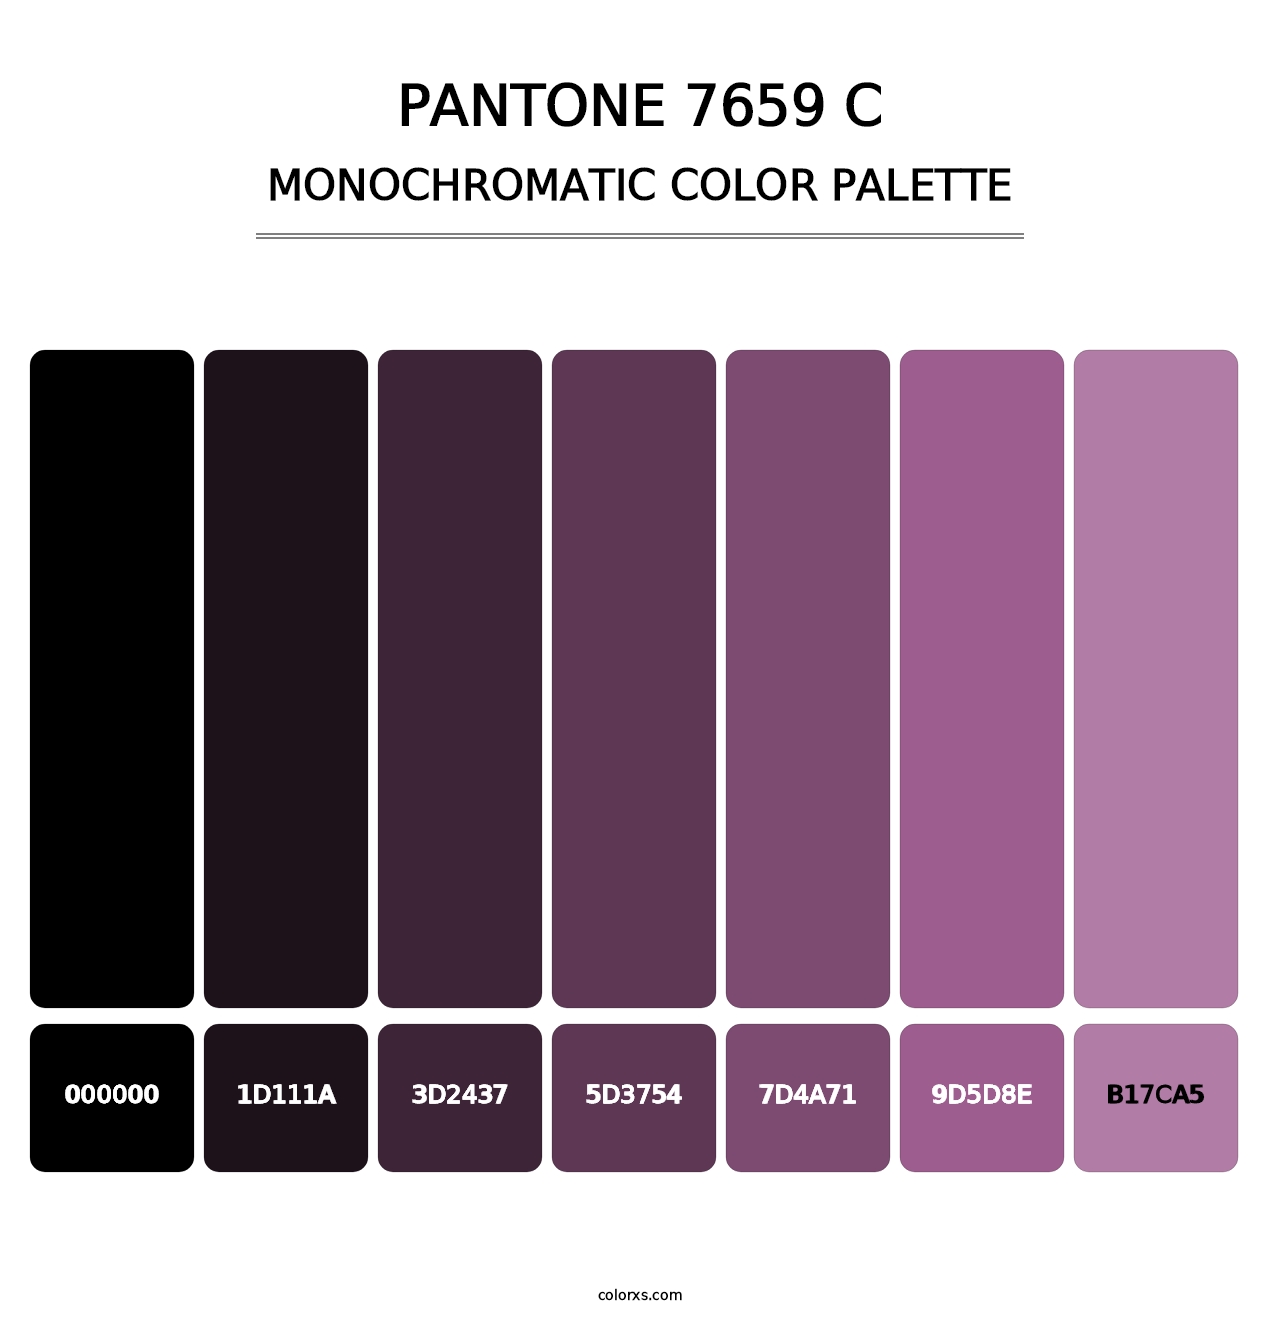 PANTONE 7659 C - Monochromatic Color Palette